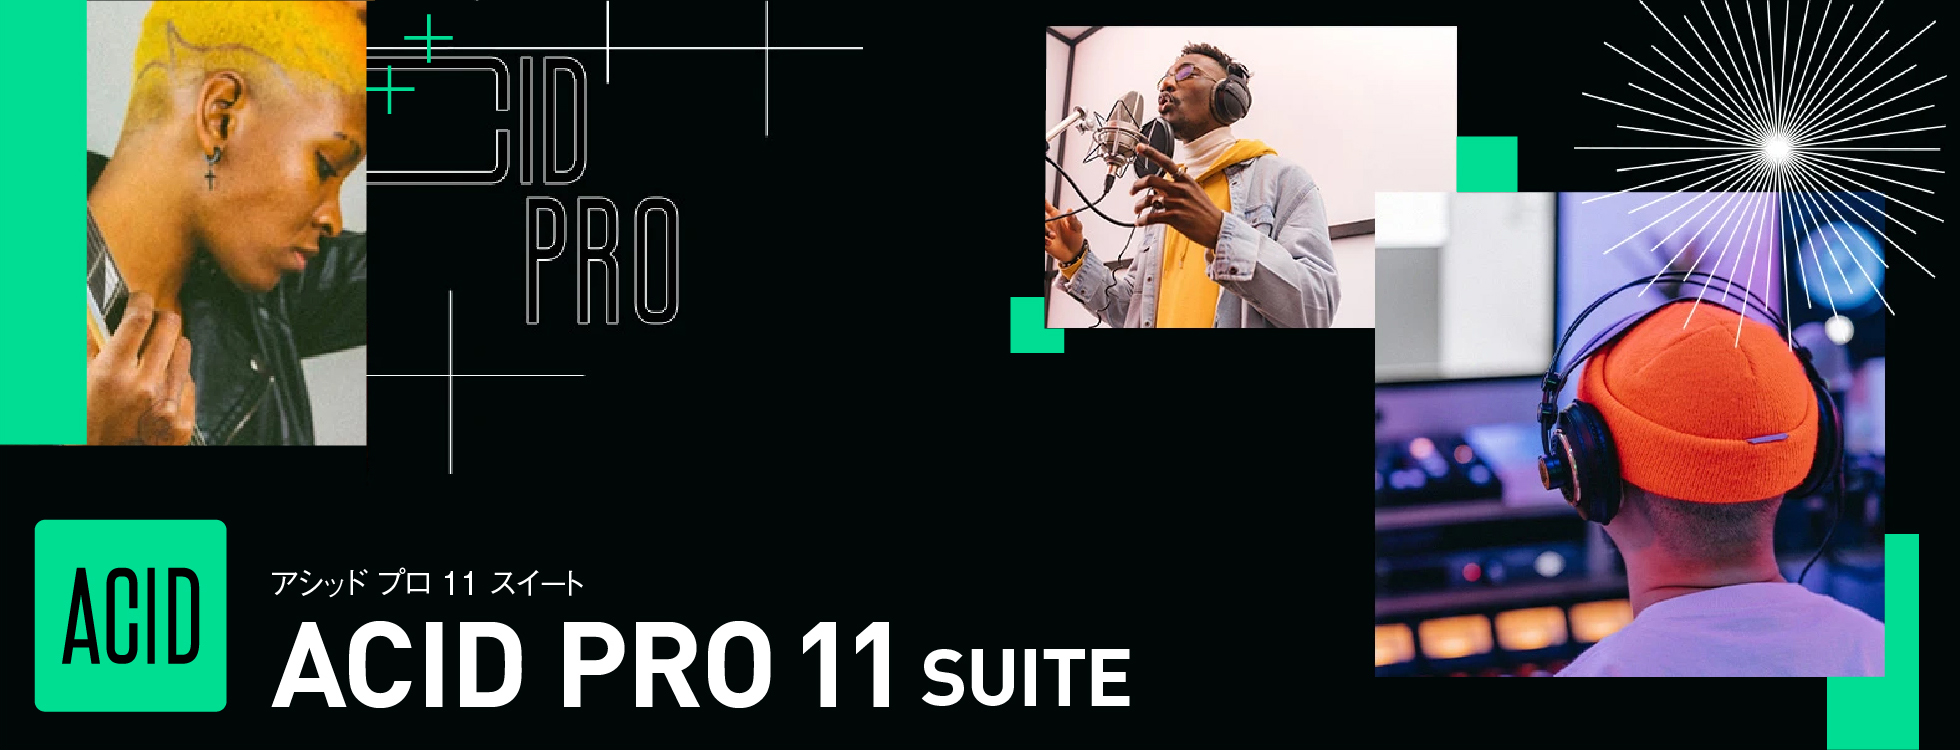 プロの作曲ソフト上位版「ACID Pro 11 Suite」